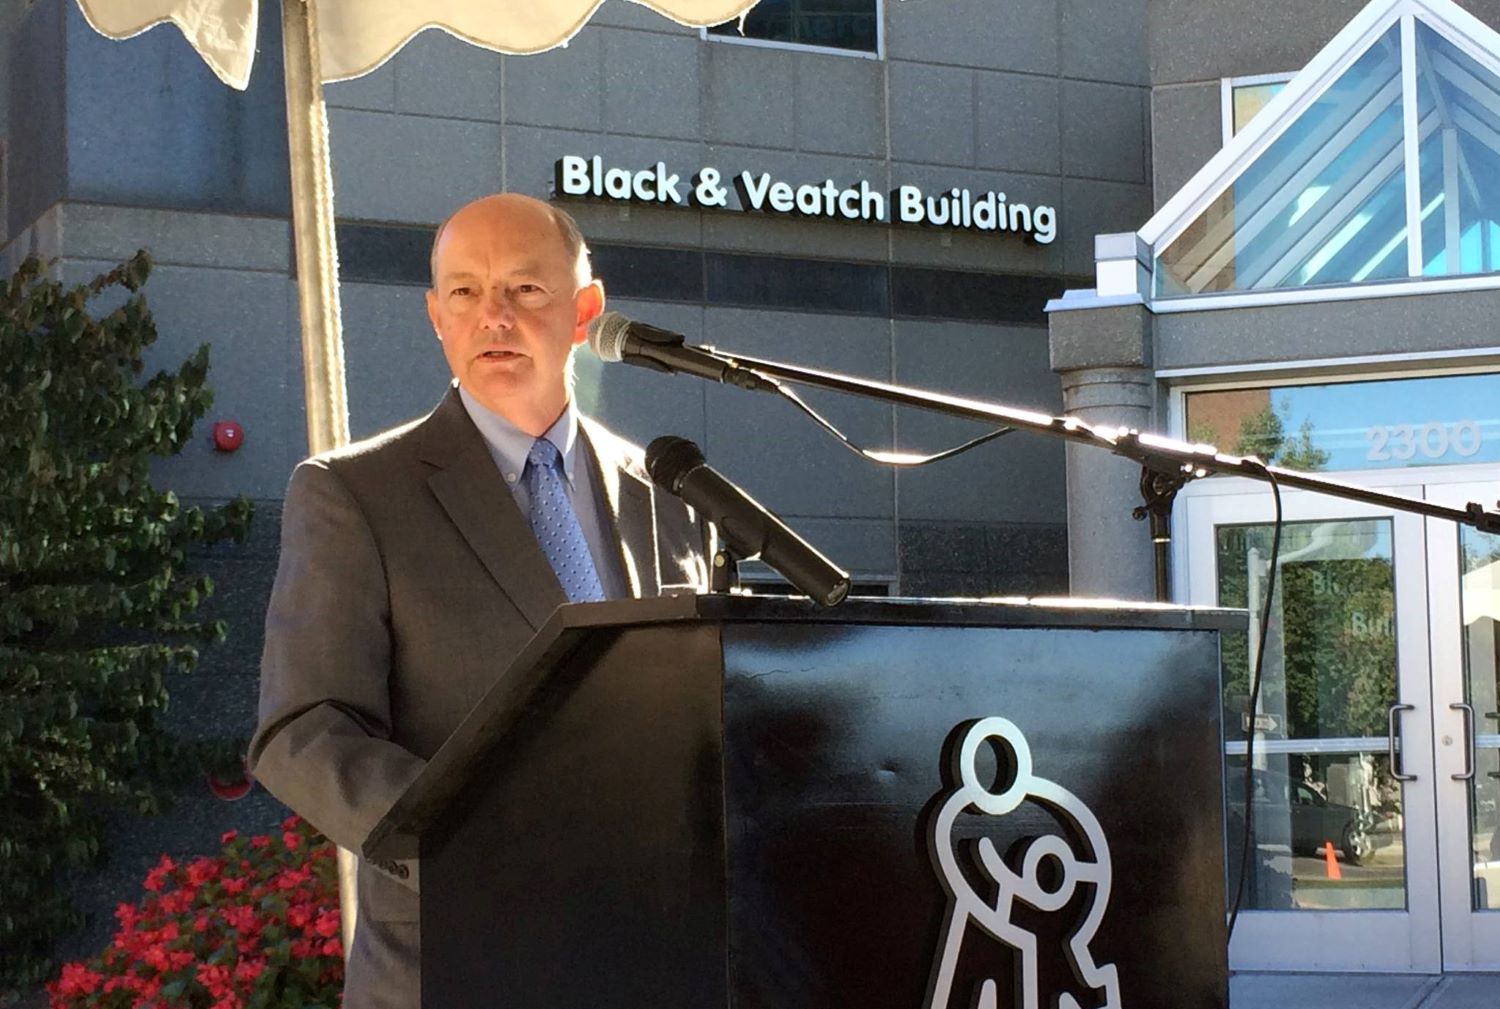 Black & Veatch CEO speak in a municipal event